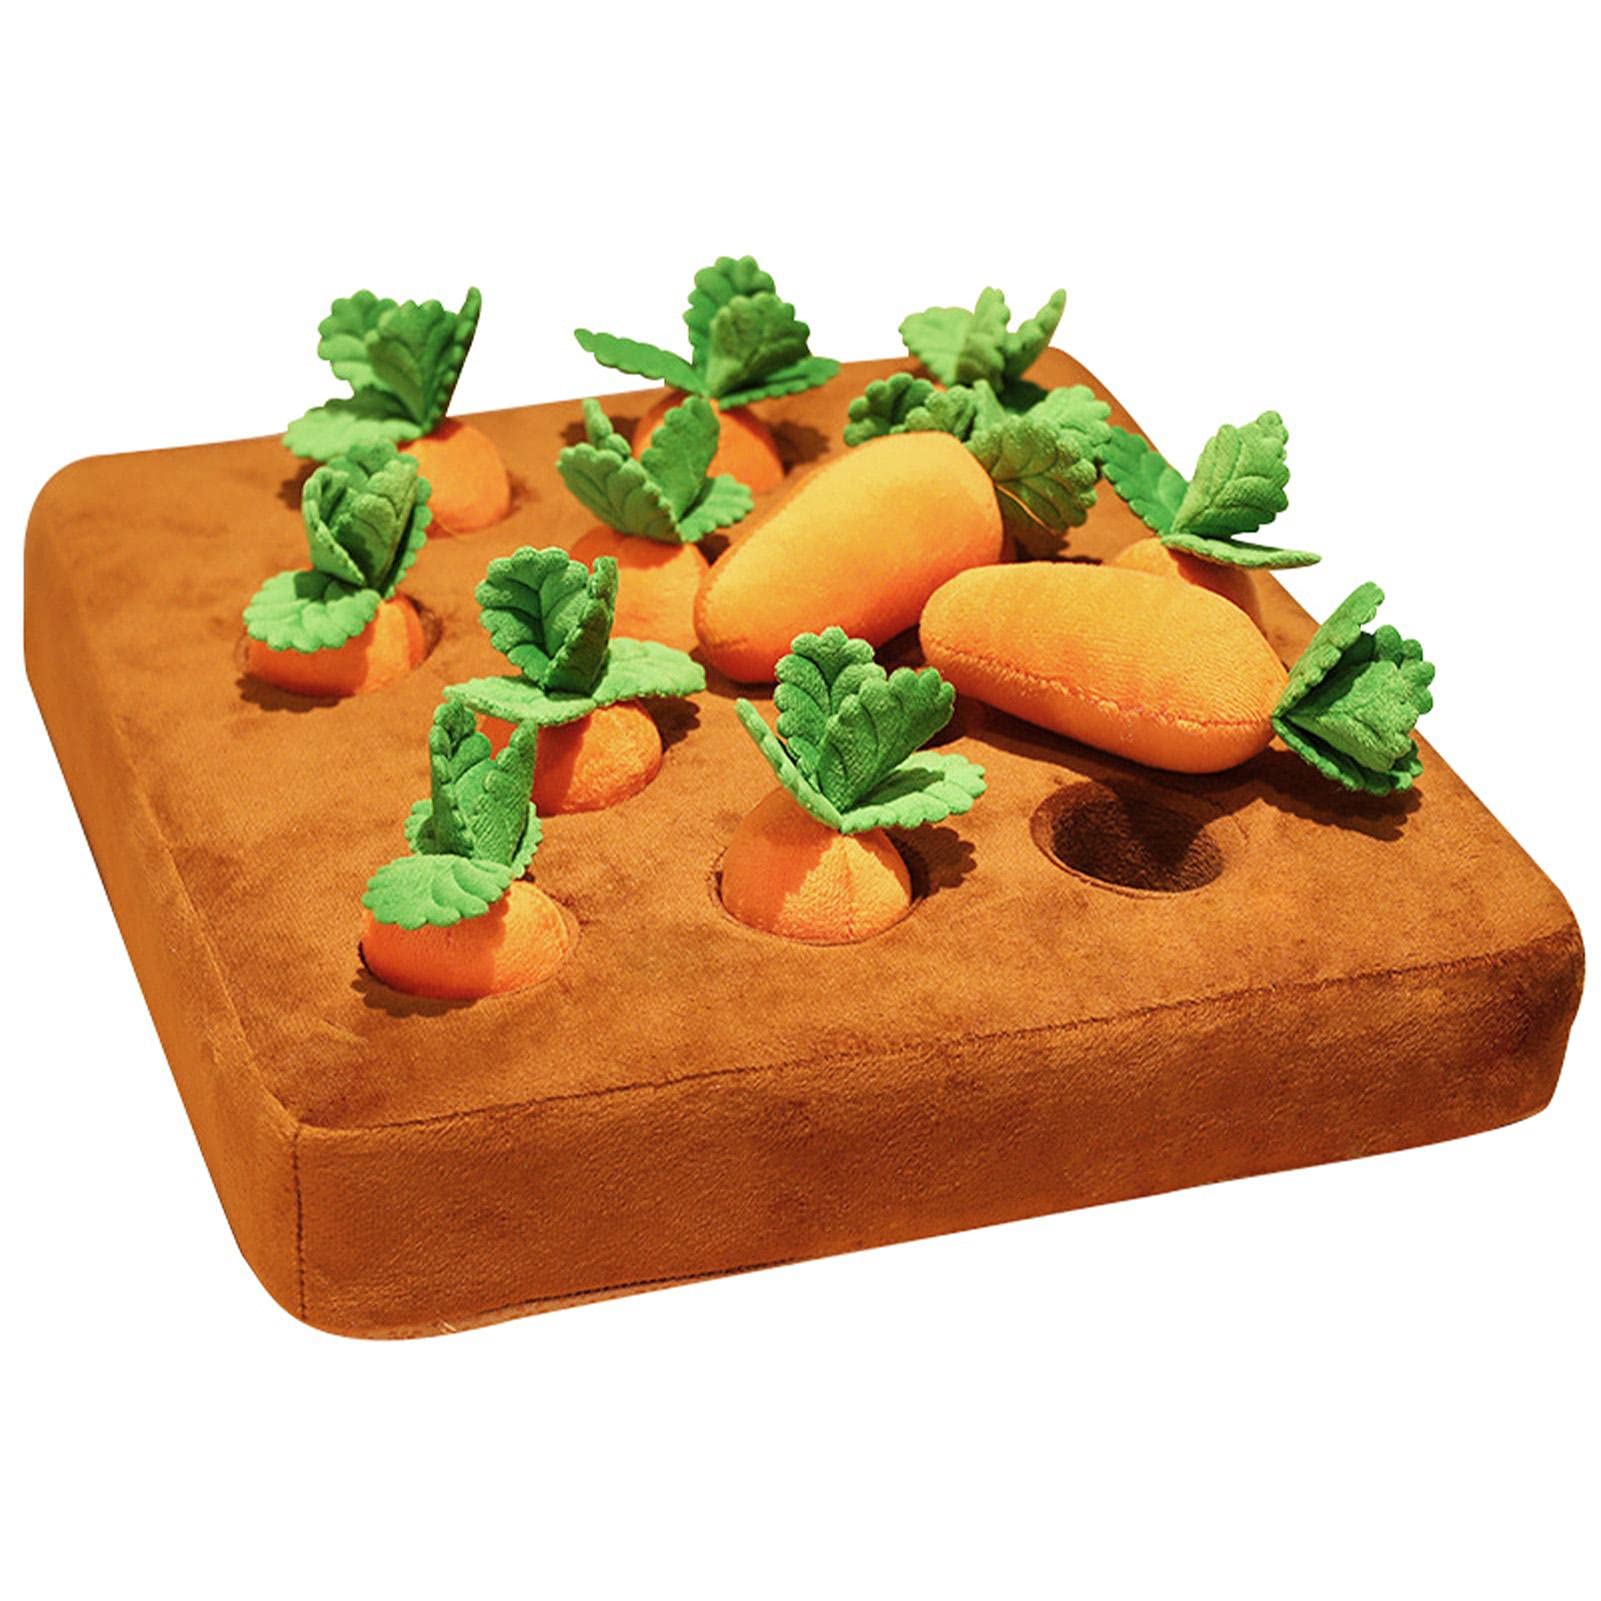 XGZ Hunde-Karotten-Plüschtier, 35 x 35 cm, Zieh-Rettich-Plüschtier, Gemüse-Kauspielzeug, Schnüffelmatte für Hunde und Katzen